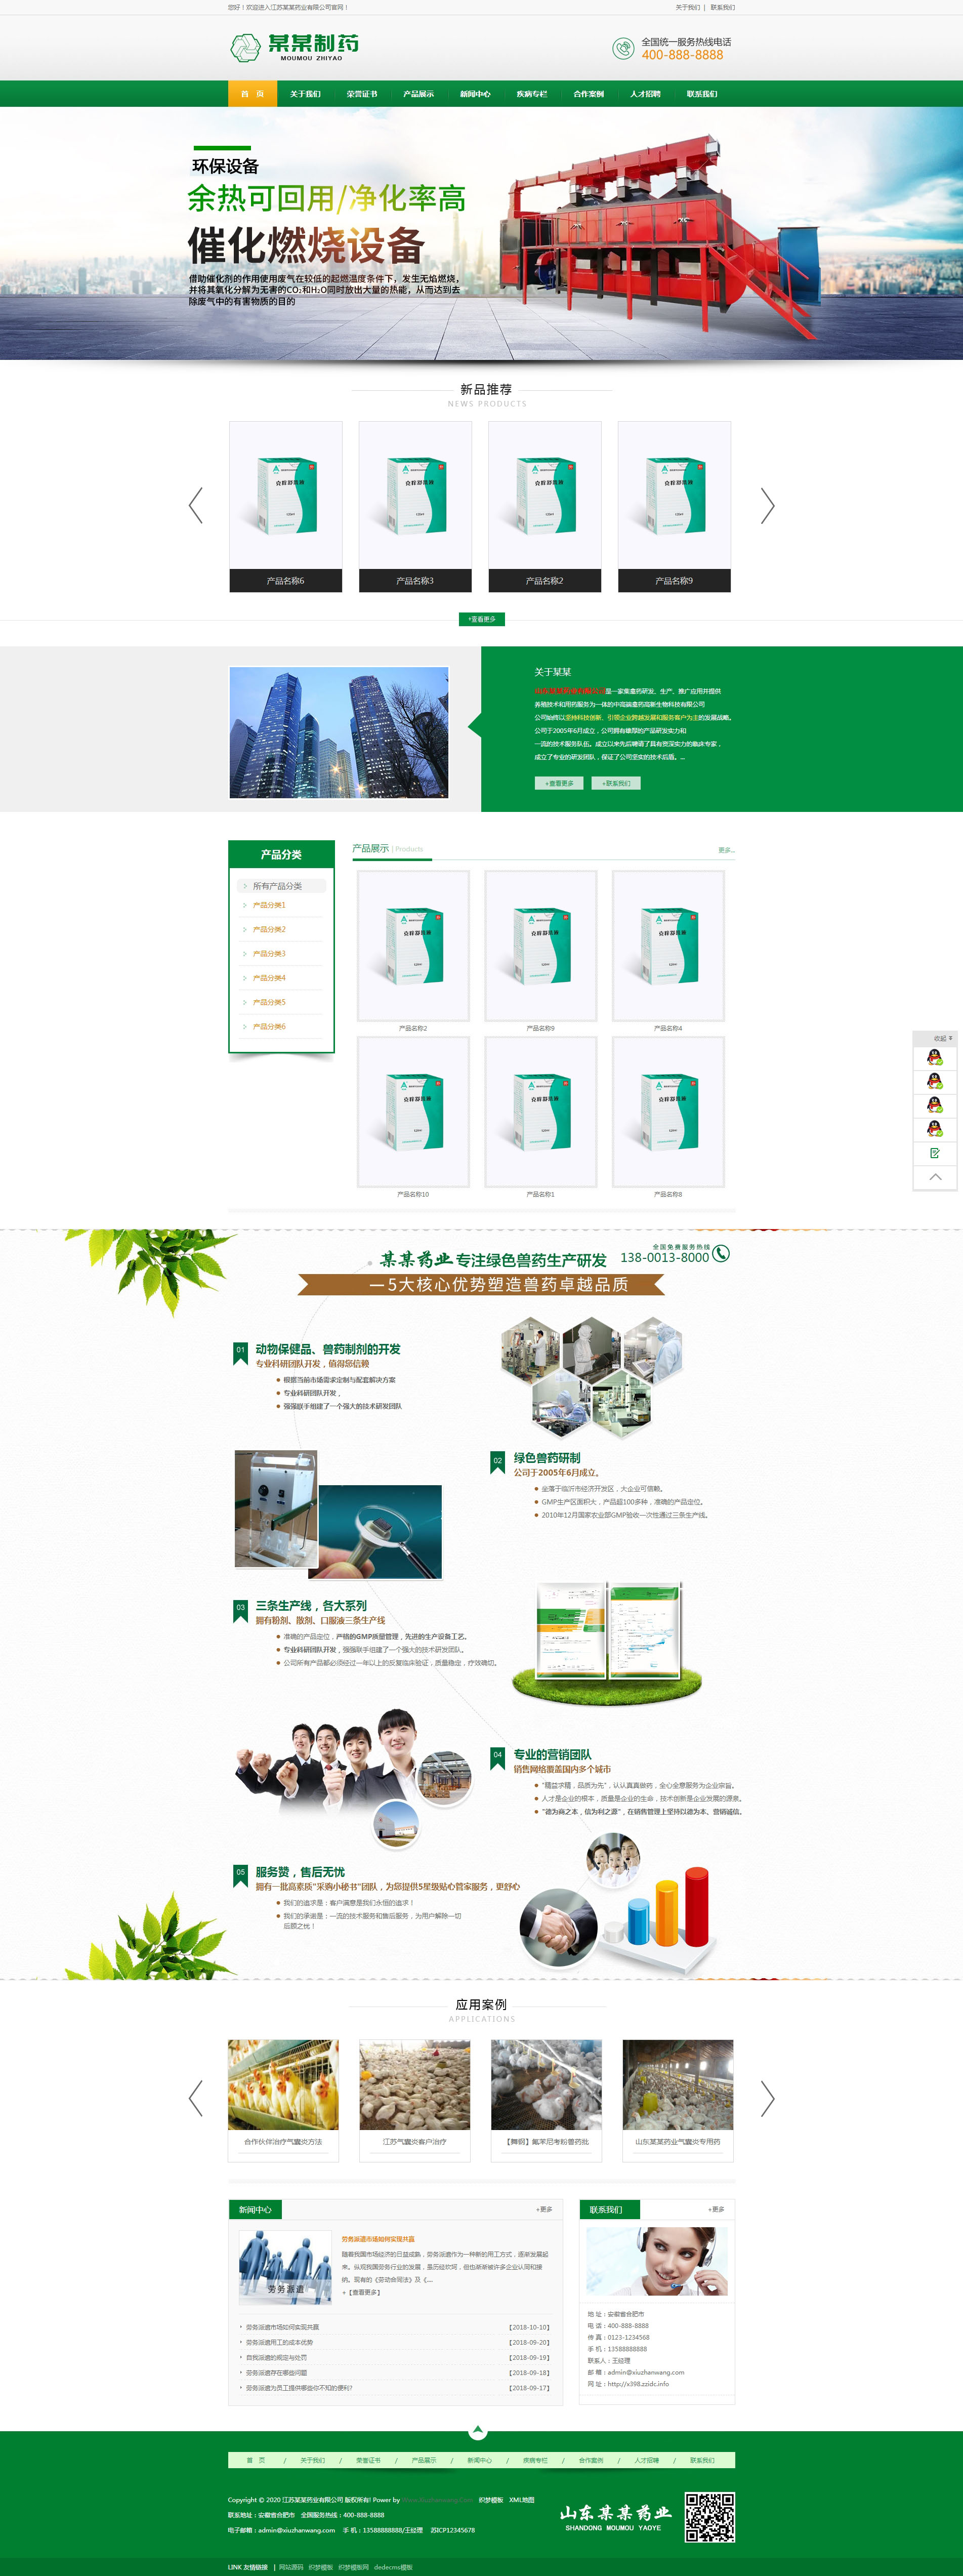 绿色制药厂药业公司营销型企业网站织梦模板(带手机版)